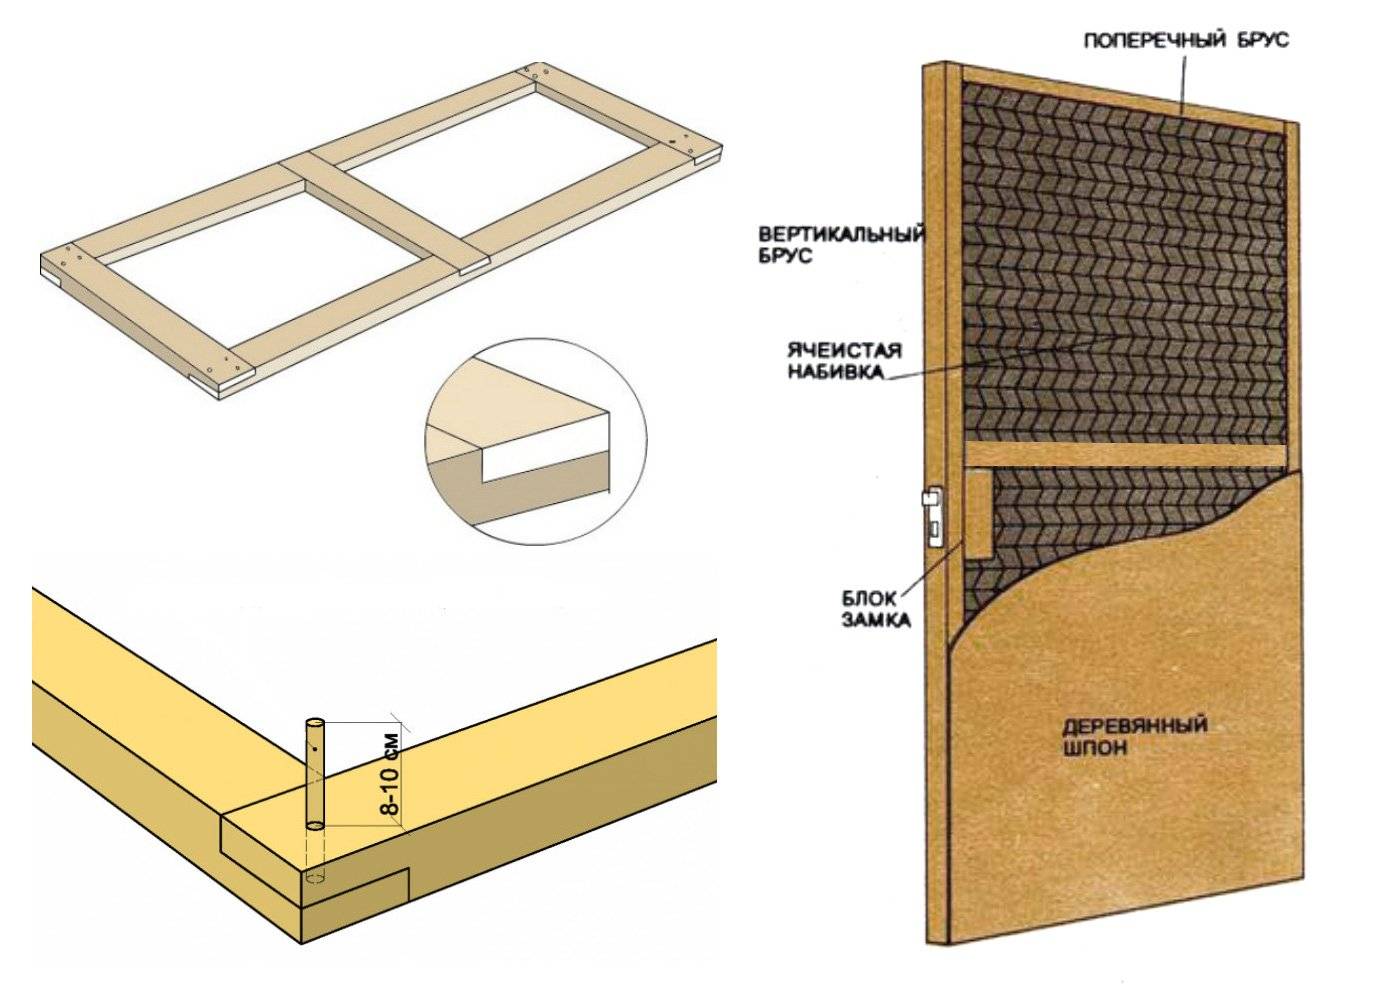 Как утеплить входную дверь на даче своими руками: деревянную, металлическую, дверную коробку, пошаговая инструкция, материалы